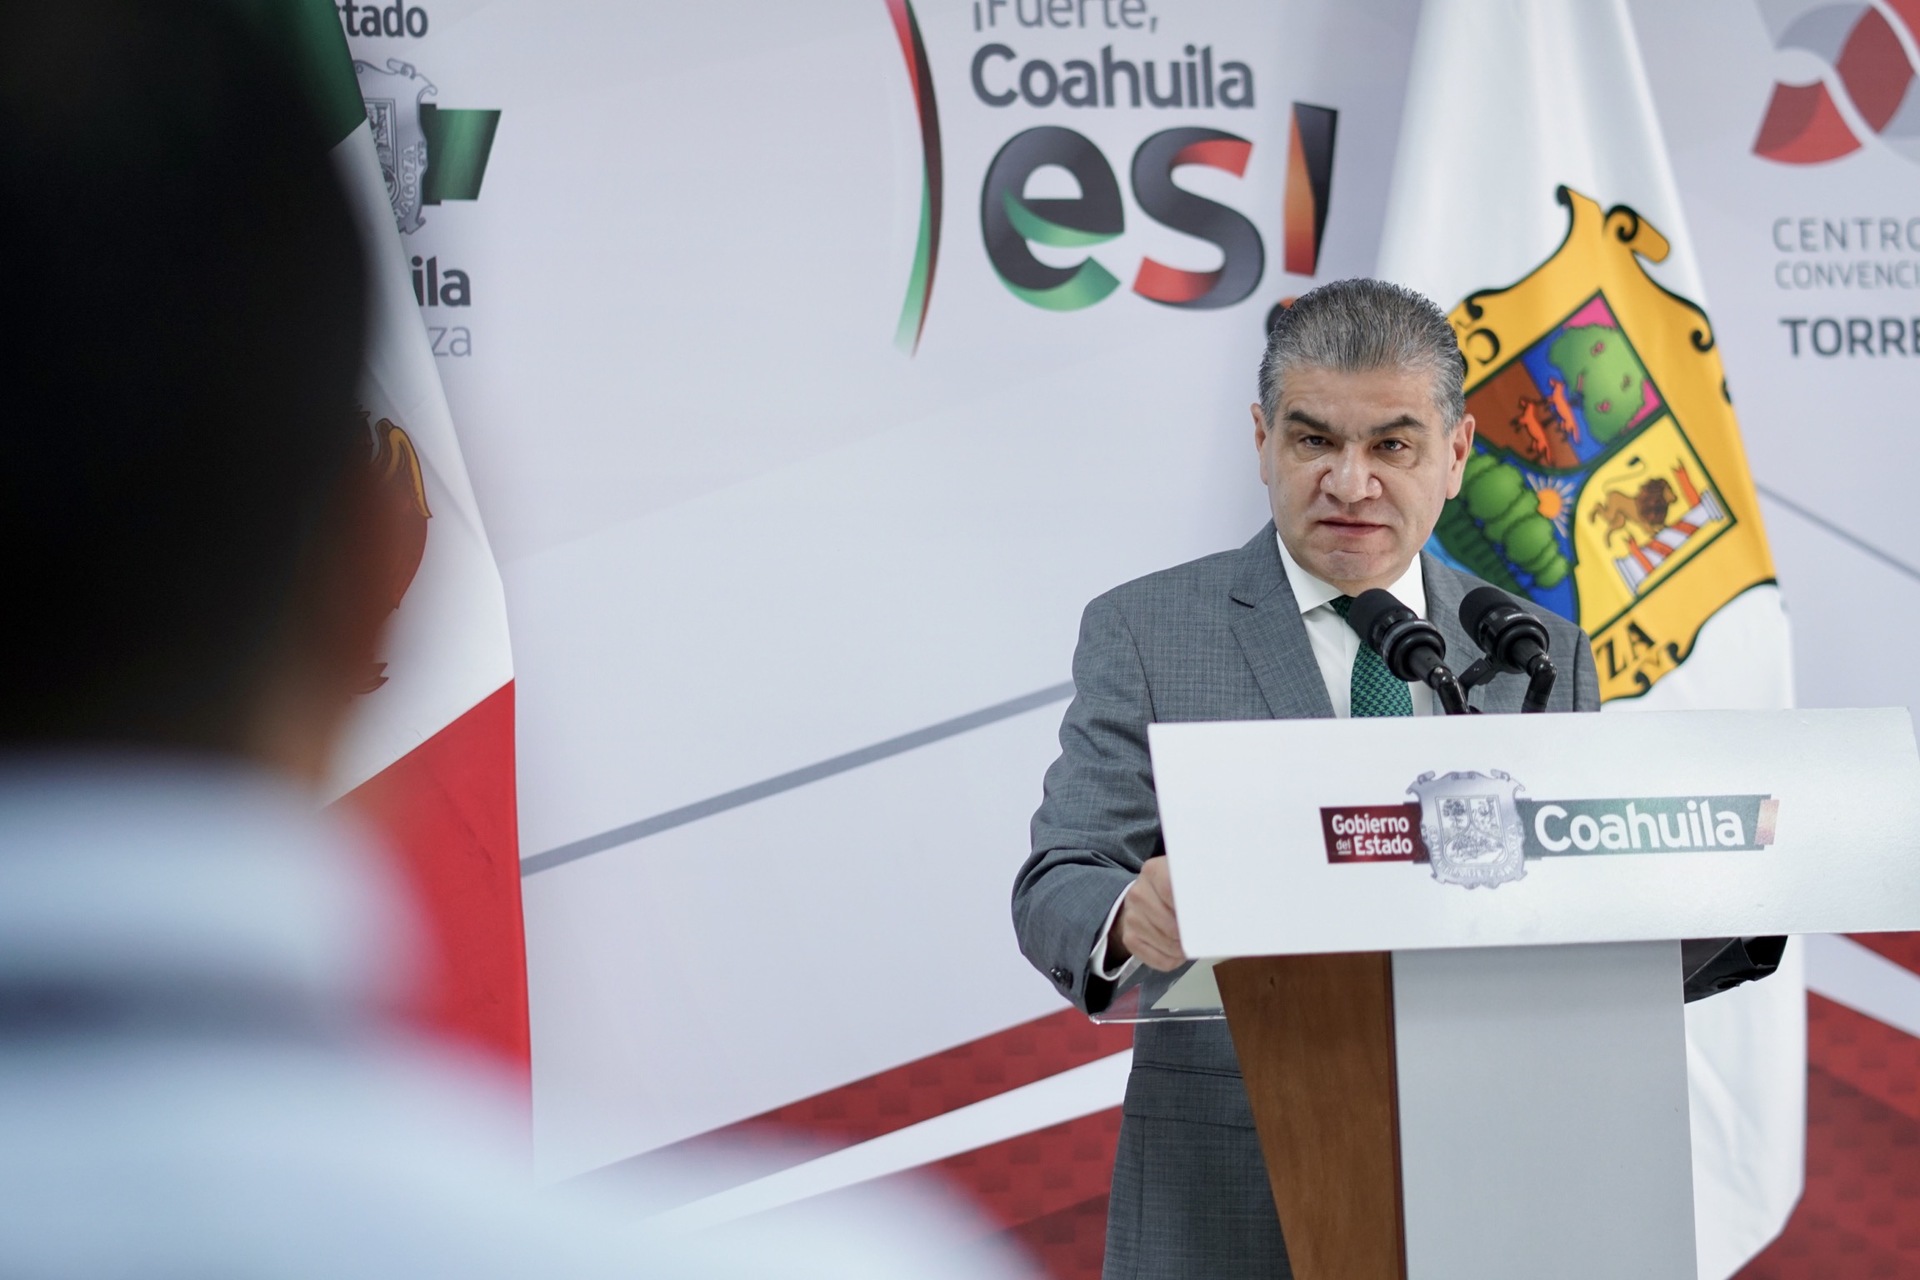 El gobernador de Coahuila recordó que dentro del tema migratorio existen diversas condiciones y formas de afrontar la problemática. (Foto: EDIE RUIZ / EL SIGLO DE TORREÓN)